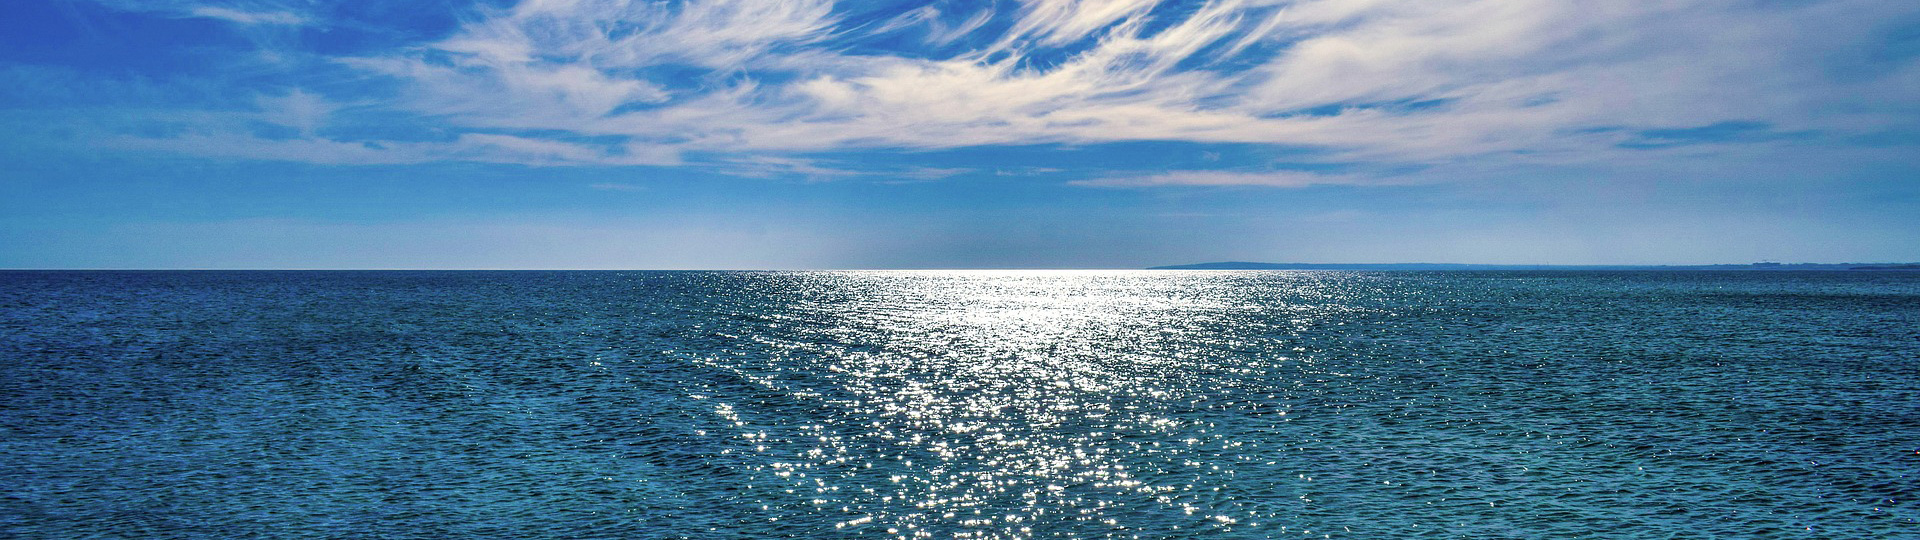 Ein beruhigendes Bild von blauem Meer und blauen Himmel, Menschenleer und unendlich